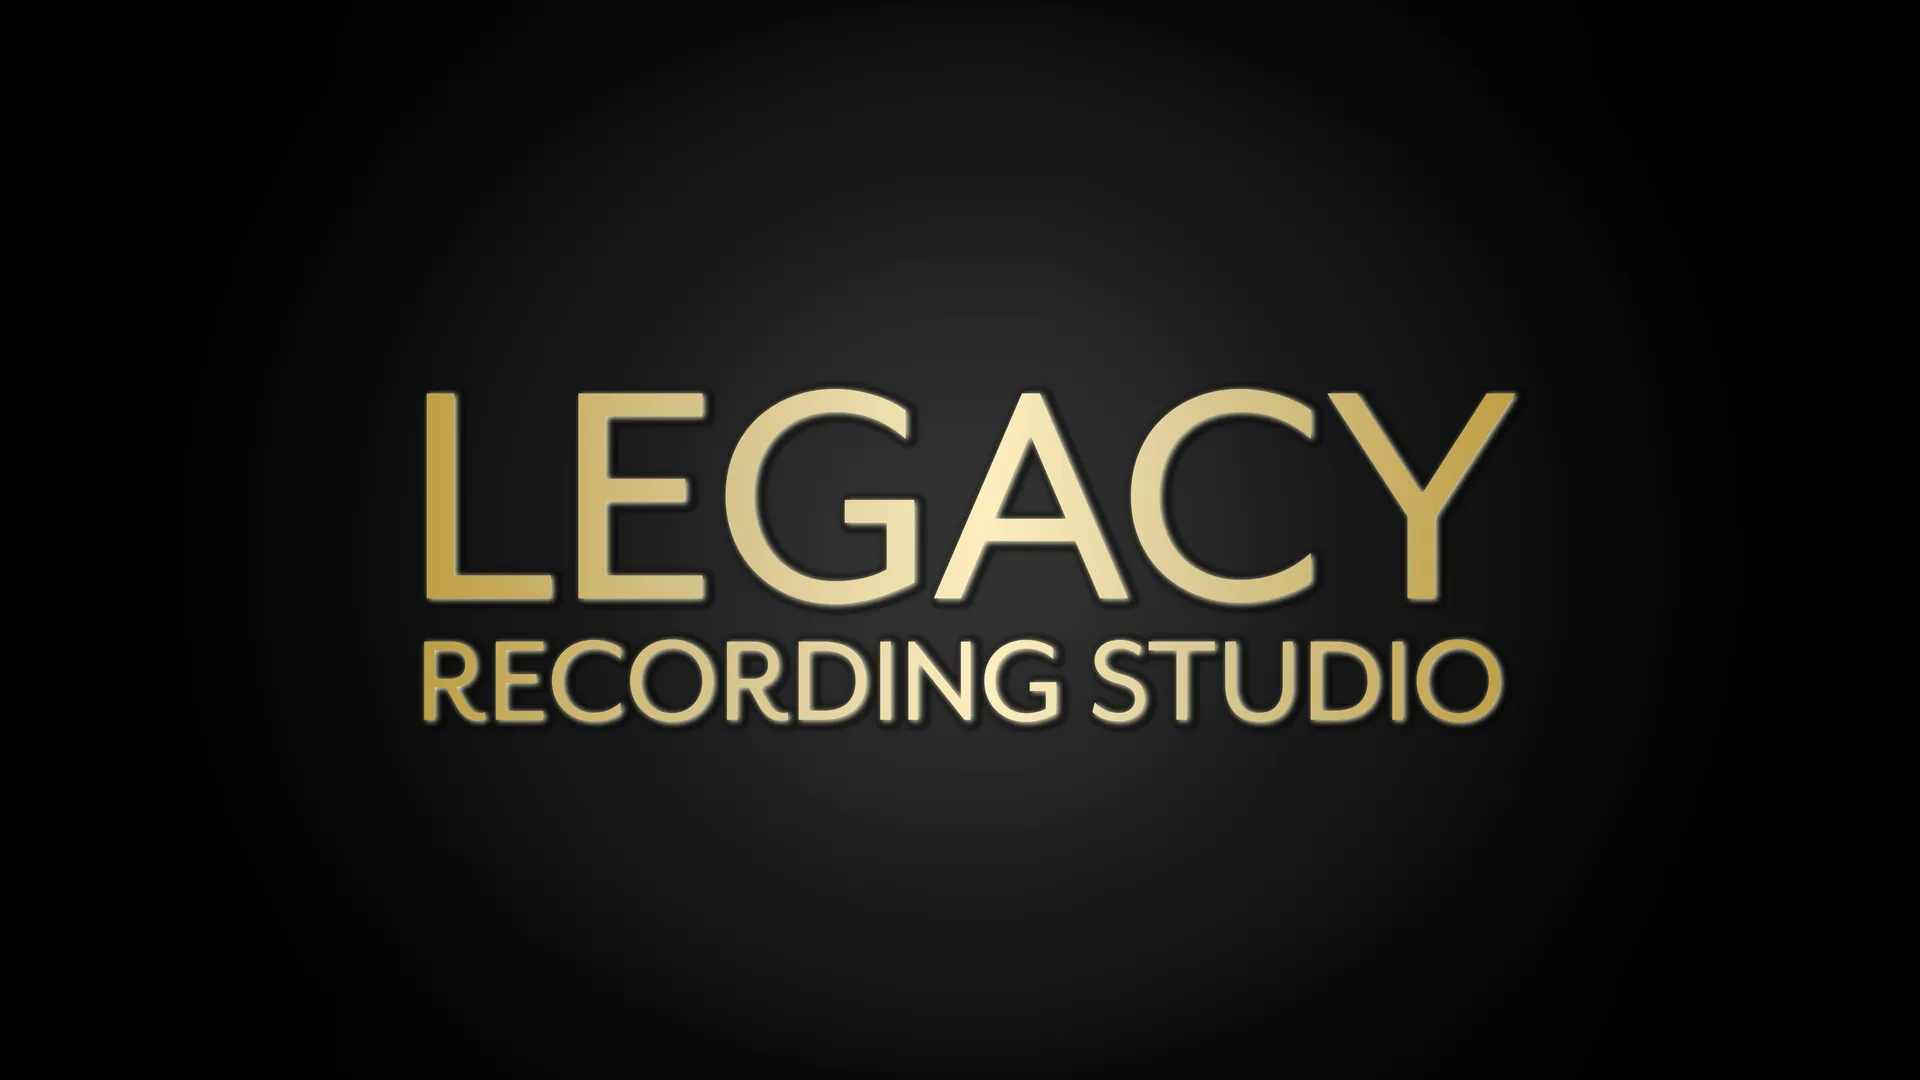 Legacy Recording Studio